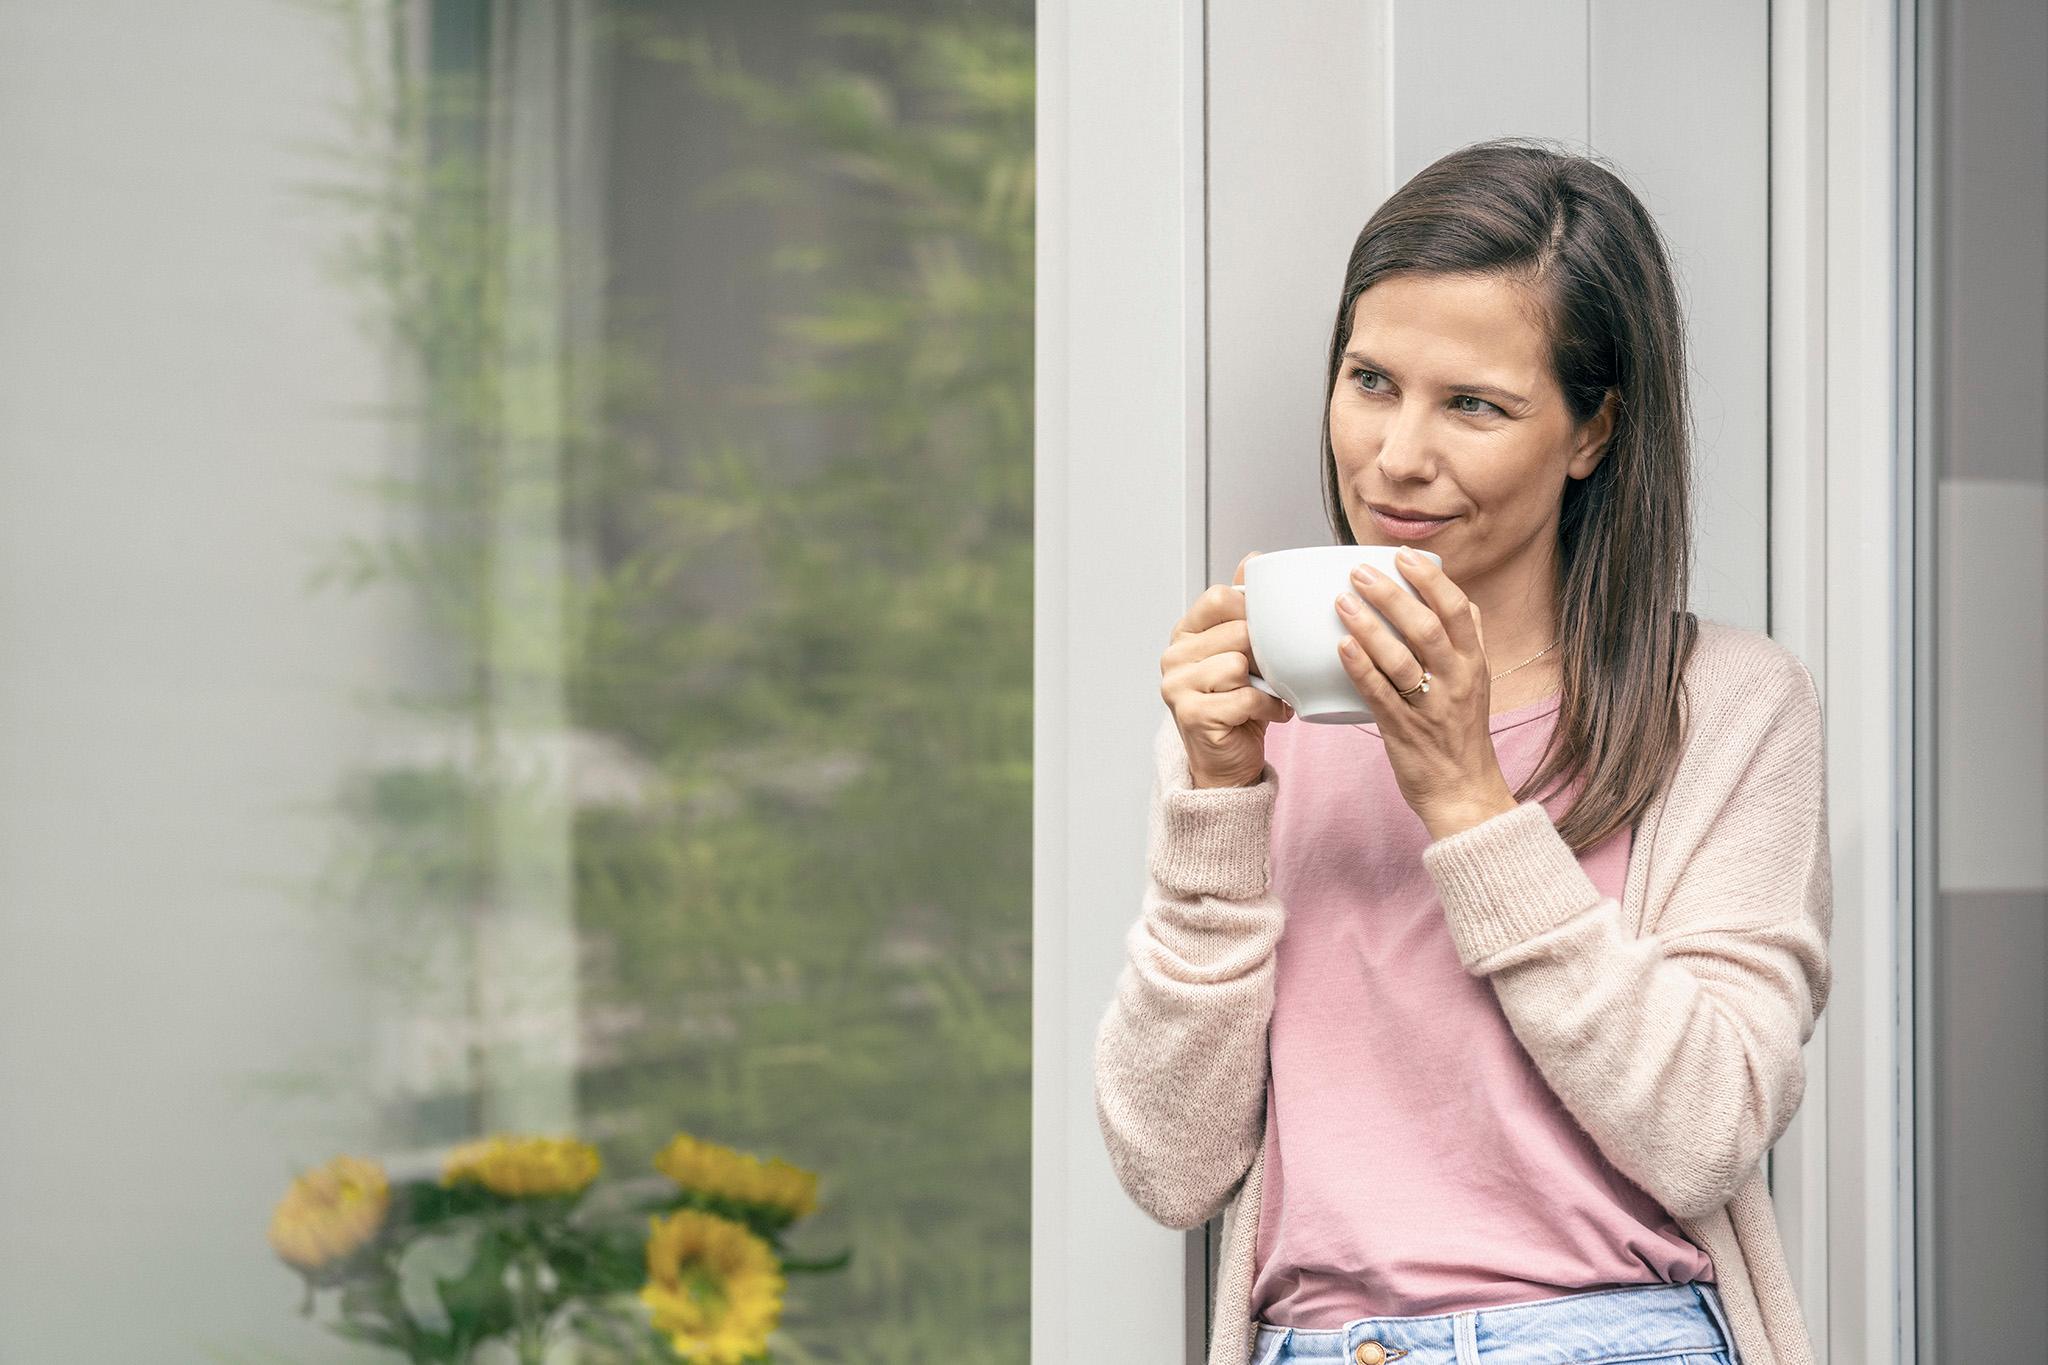 Frau mit Tasse im Garten - Warum Solaranlage mit zolar?